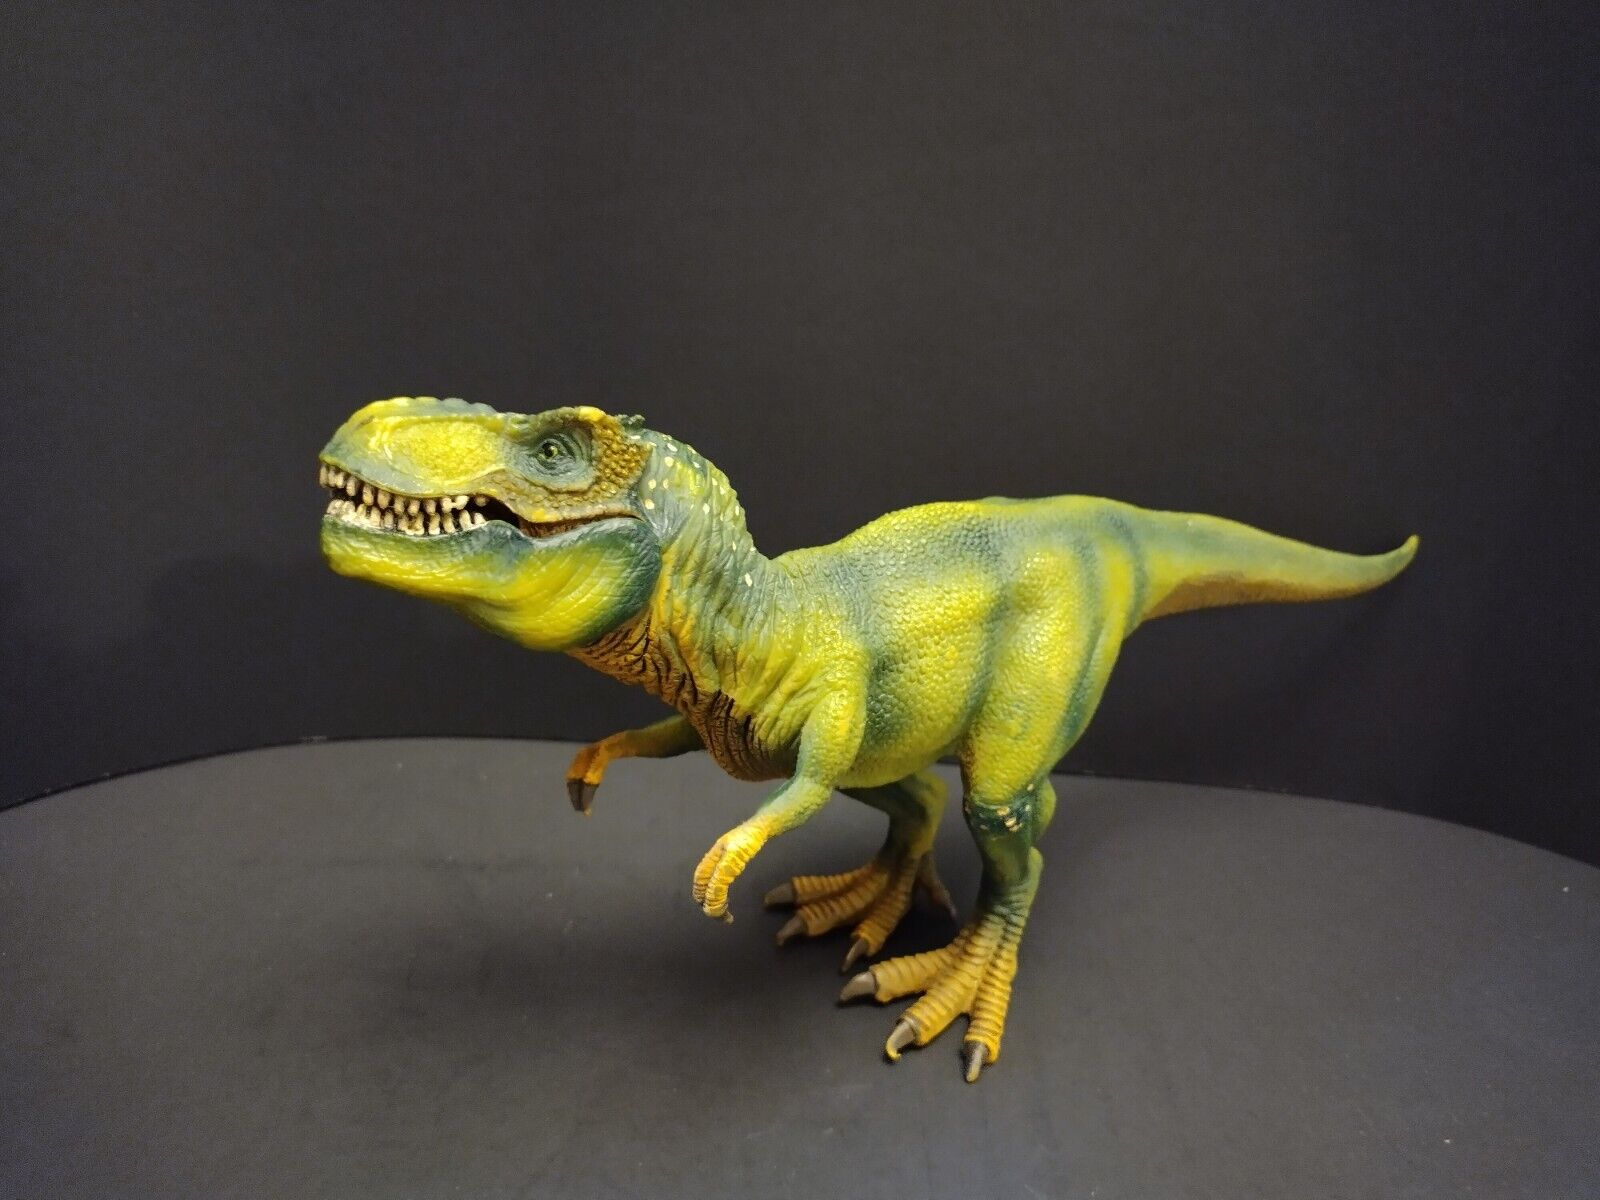 Schleich Green Tyrannosaurus T-Rex Dinosaur Figure 11